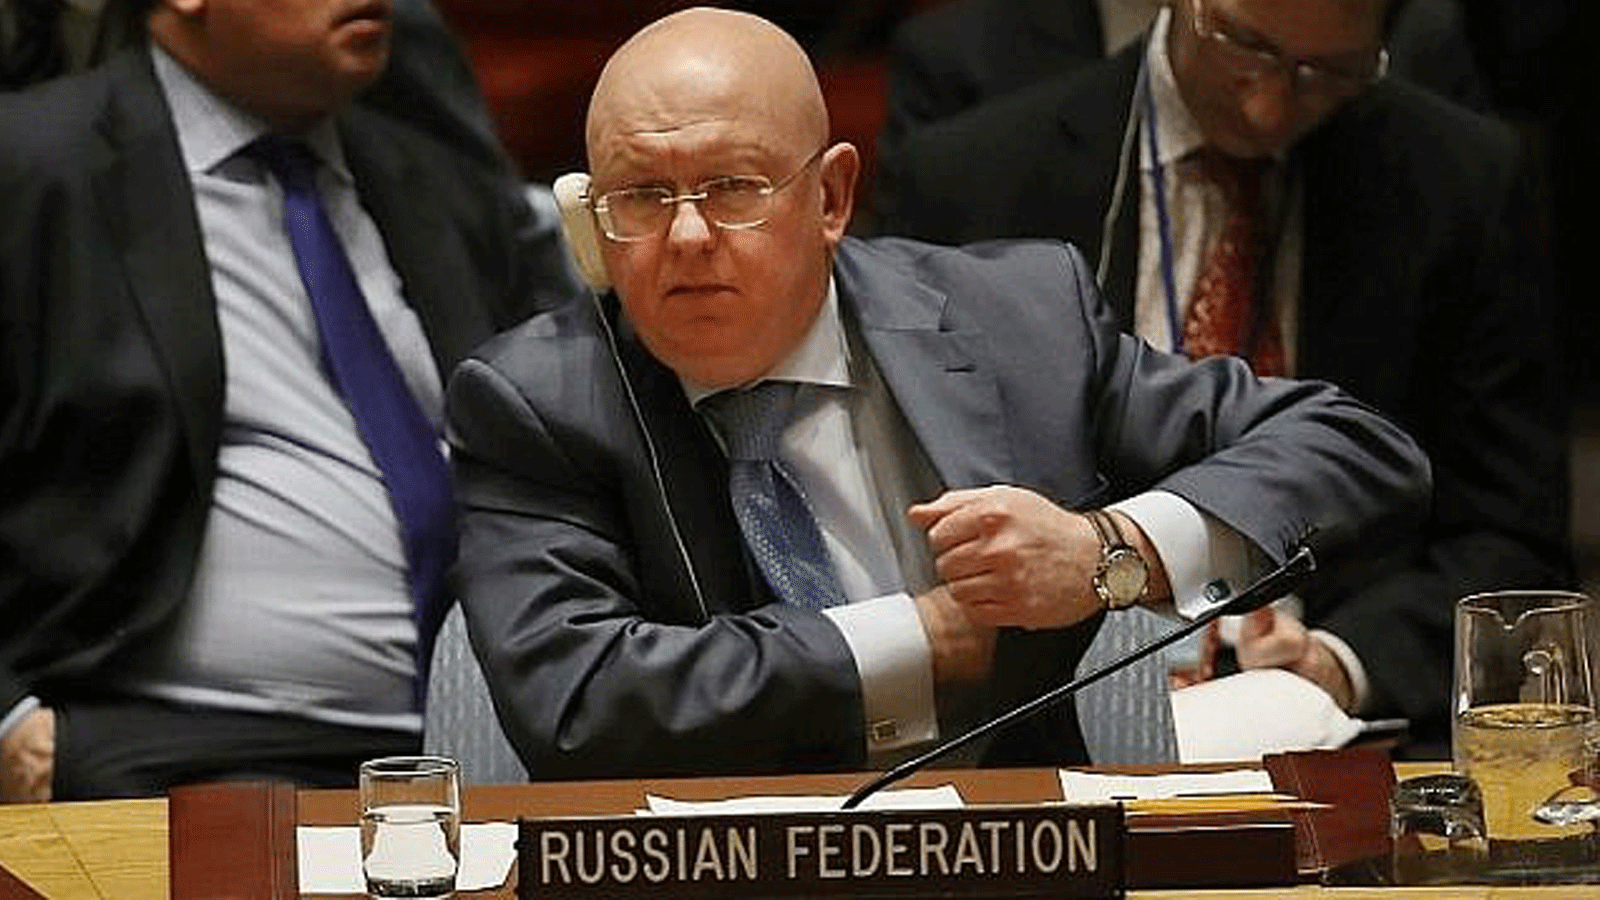 السفير الروسي لدى الأمم المتحدة فاسيلي نيبينزيا خلال اجتماع لمجلس الأمن الدولي حول الوضع في سوريا في الأمم المتحدة/ مدينة نيويورك. في 12 آذار/مارس 2018